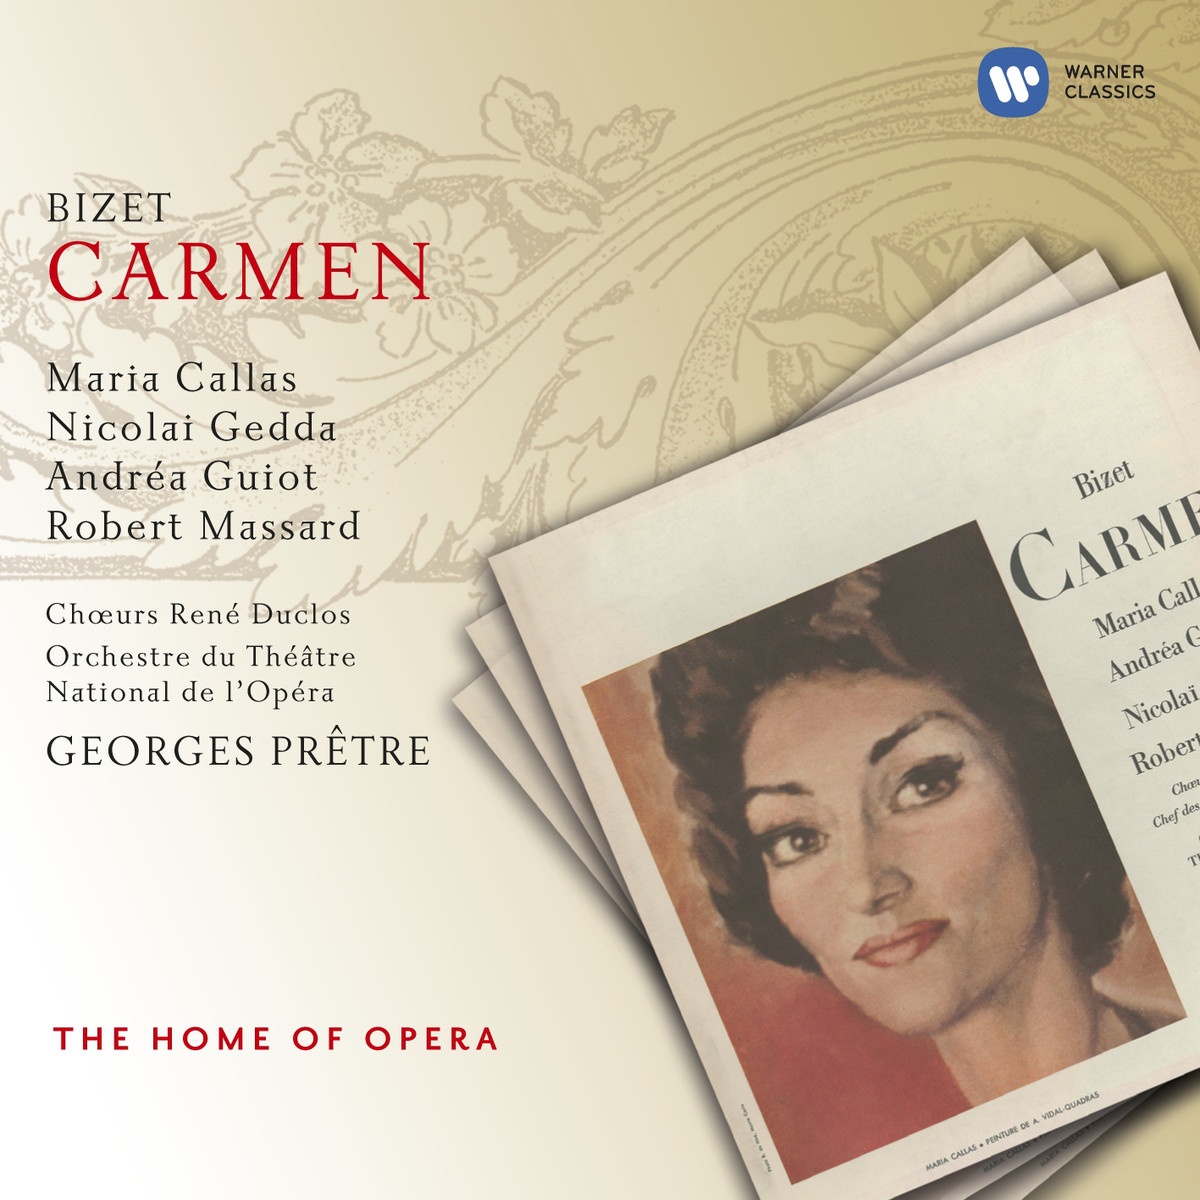 Carmen (1997 Digital Remaster), Act 2: Enfin c'est toi!...Tout doux, Monsieur